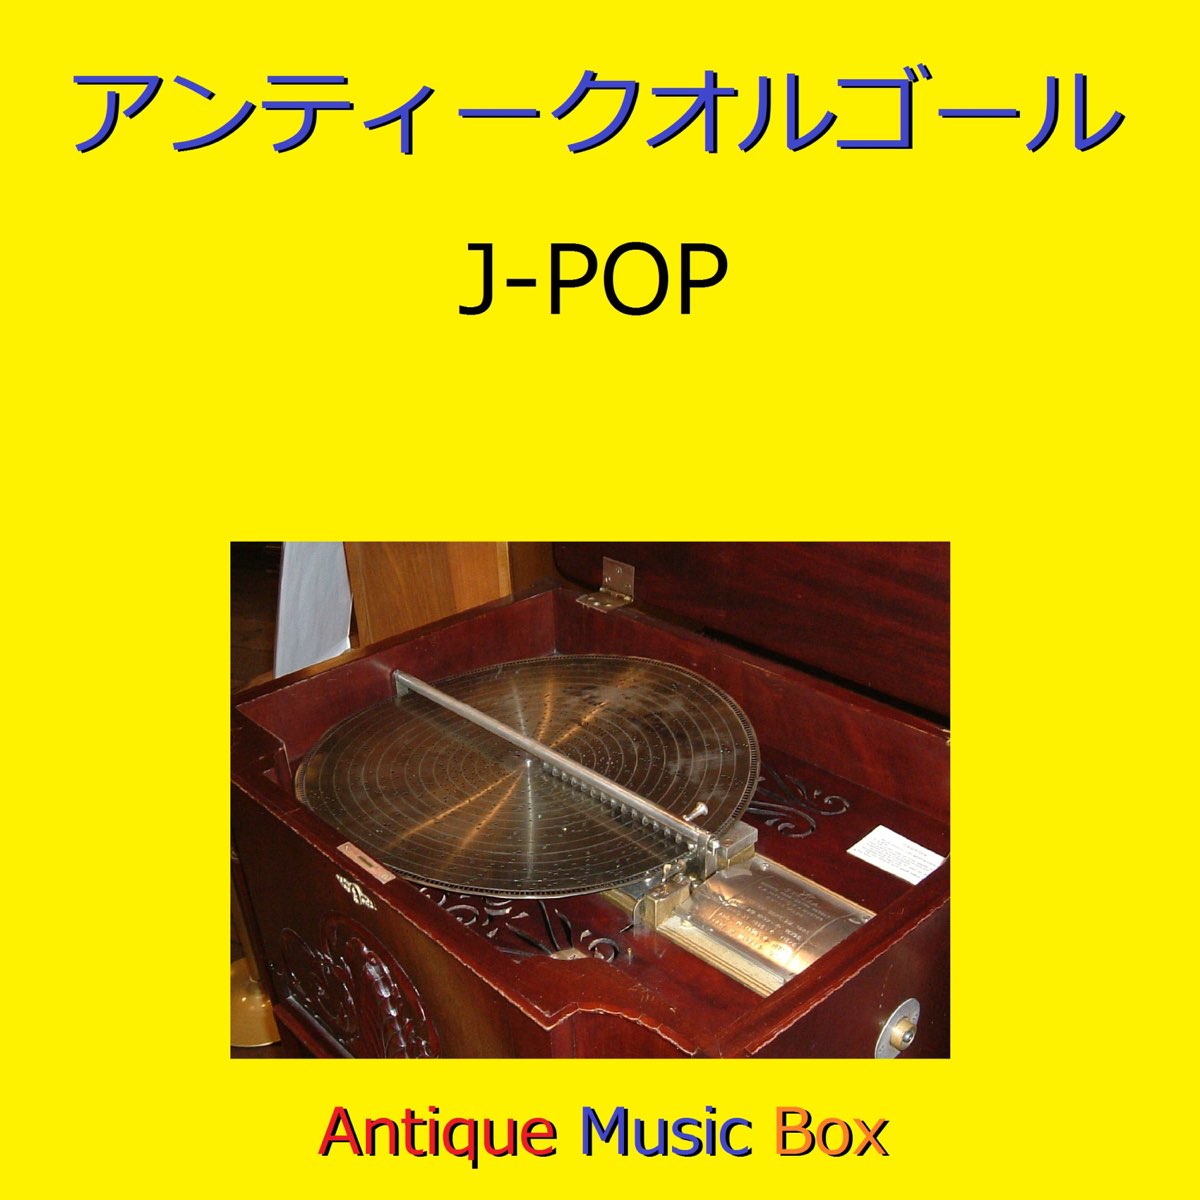 オルゴールサウンド J Popの アンティークオルゴール作品集 J Pop Vol 9 をapple Musicで